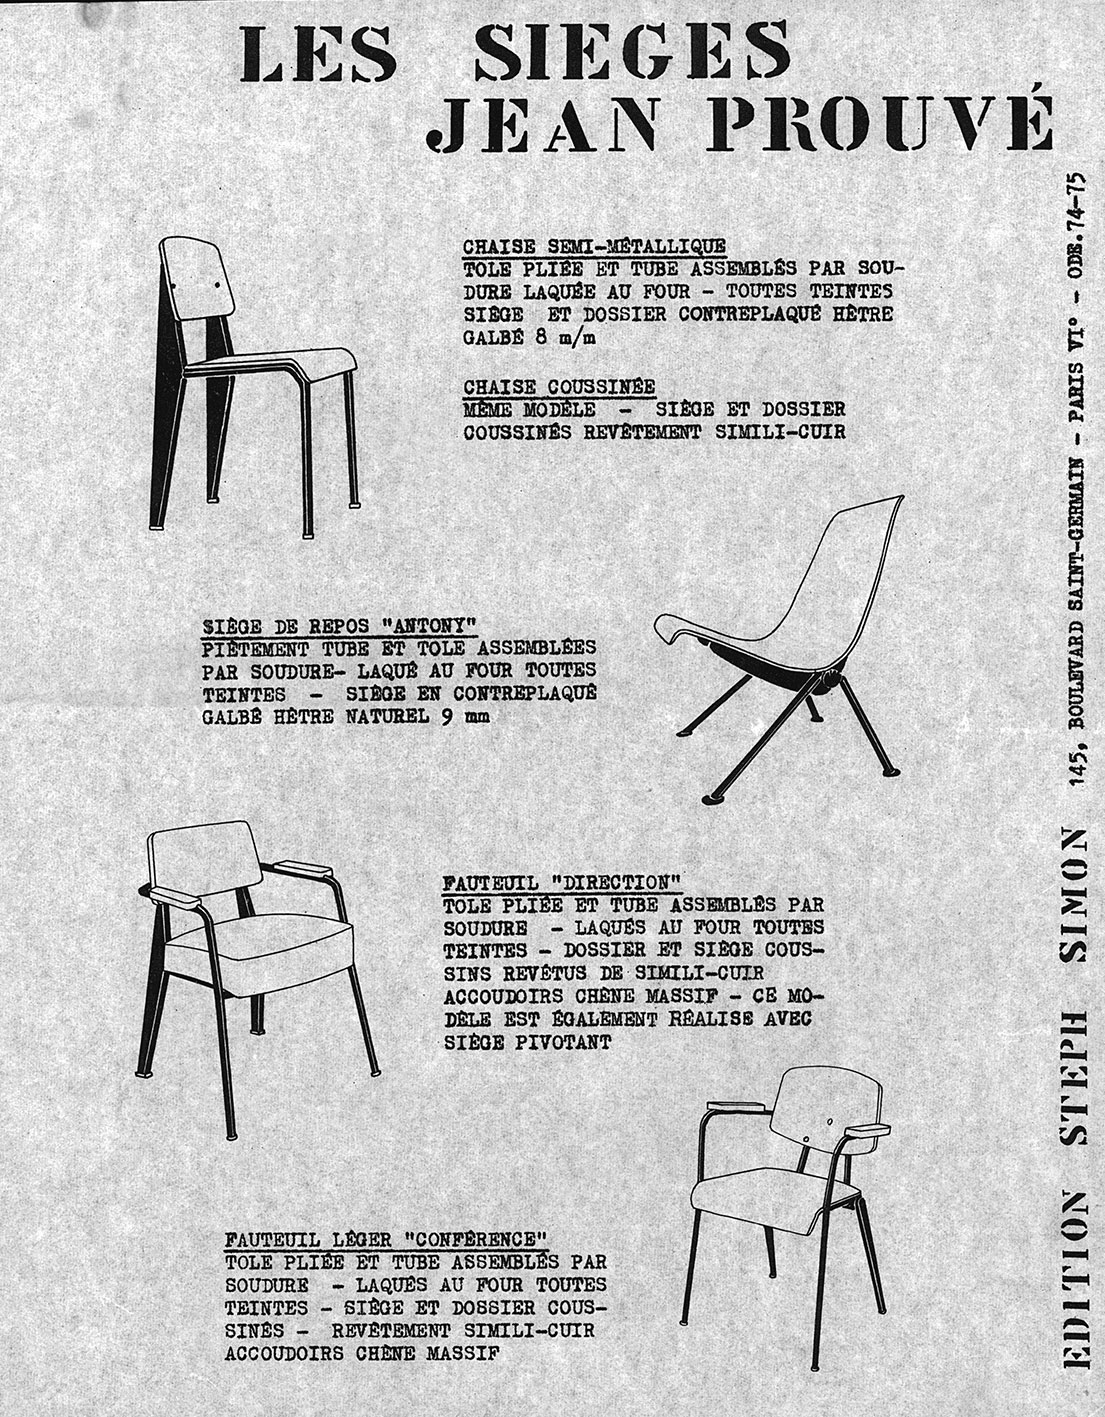 “Les sièges Jean Prouvé”. Steph Simon presentation sheet, ca. 1957.